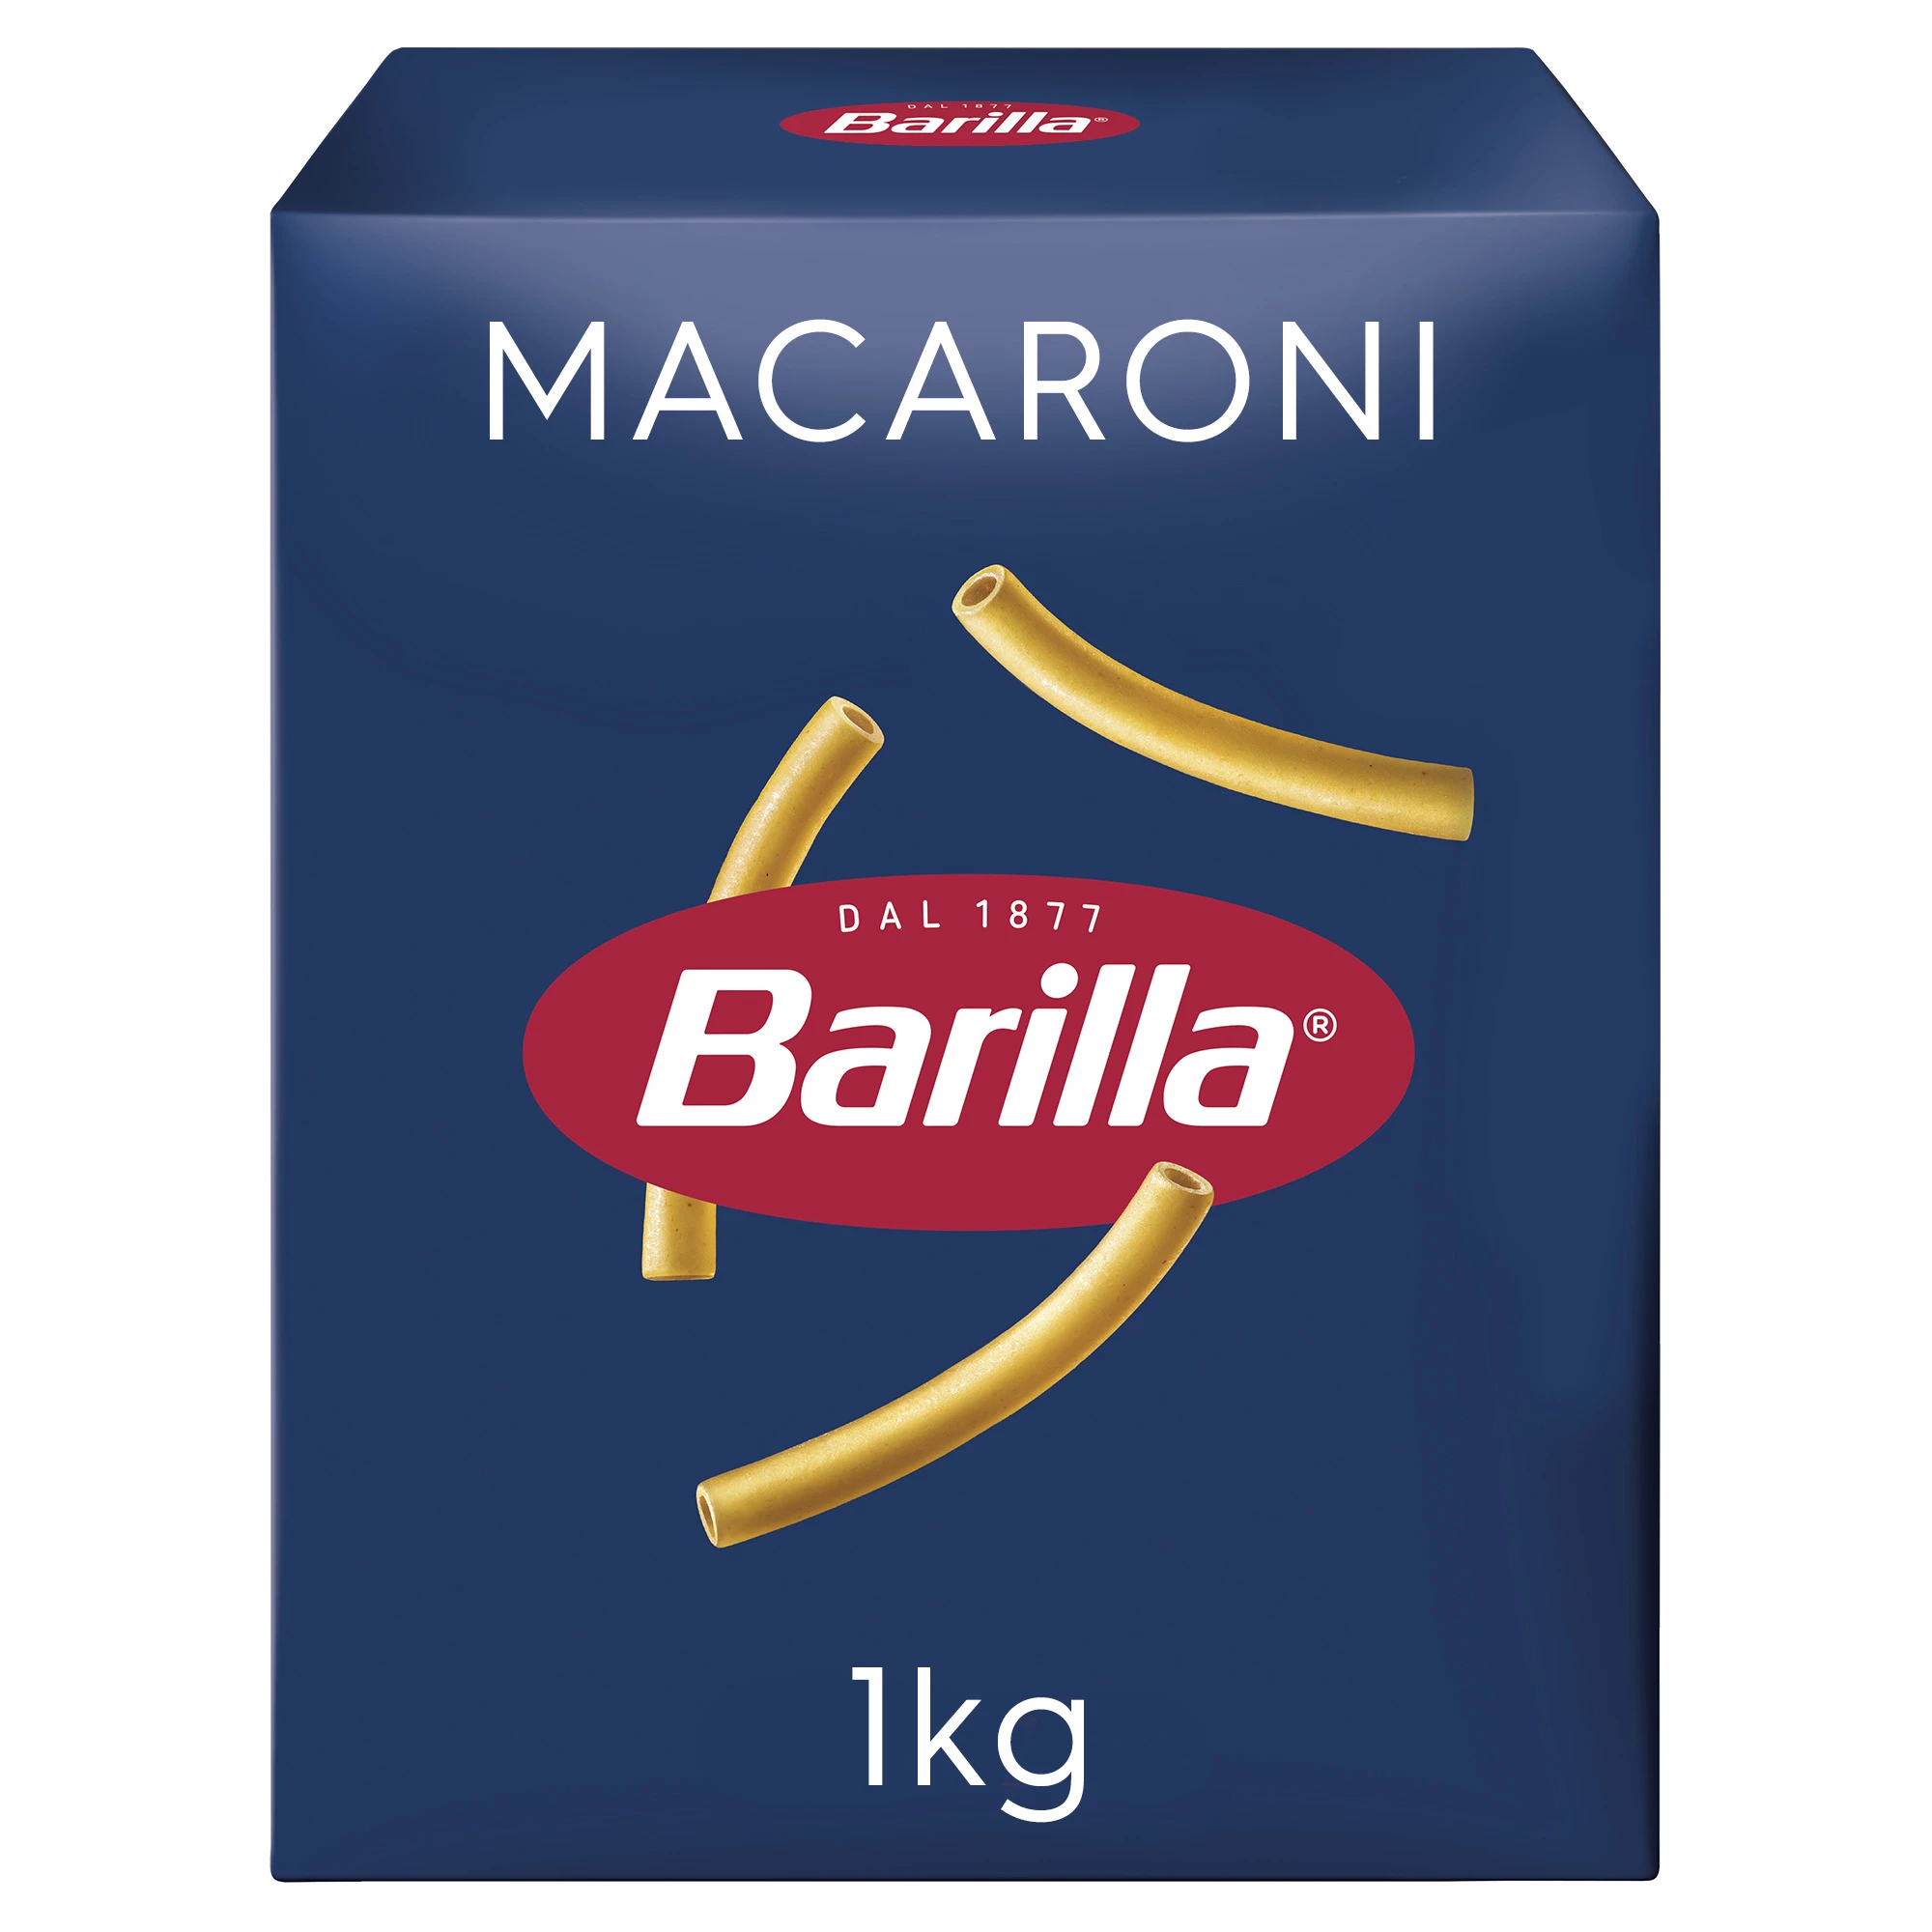 マカロニパスタ 1kg - BARILLA